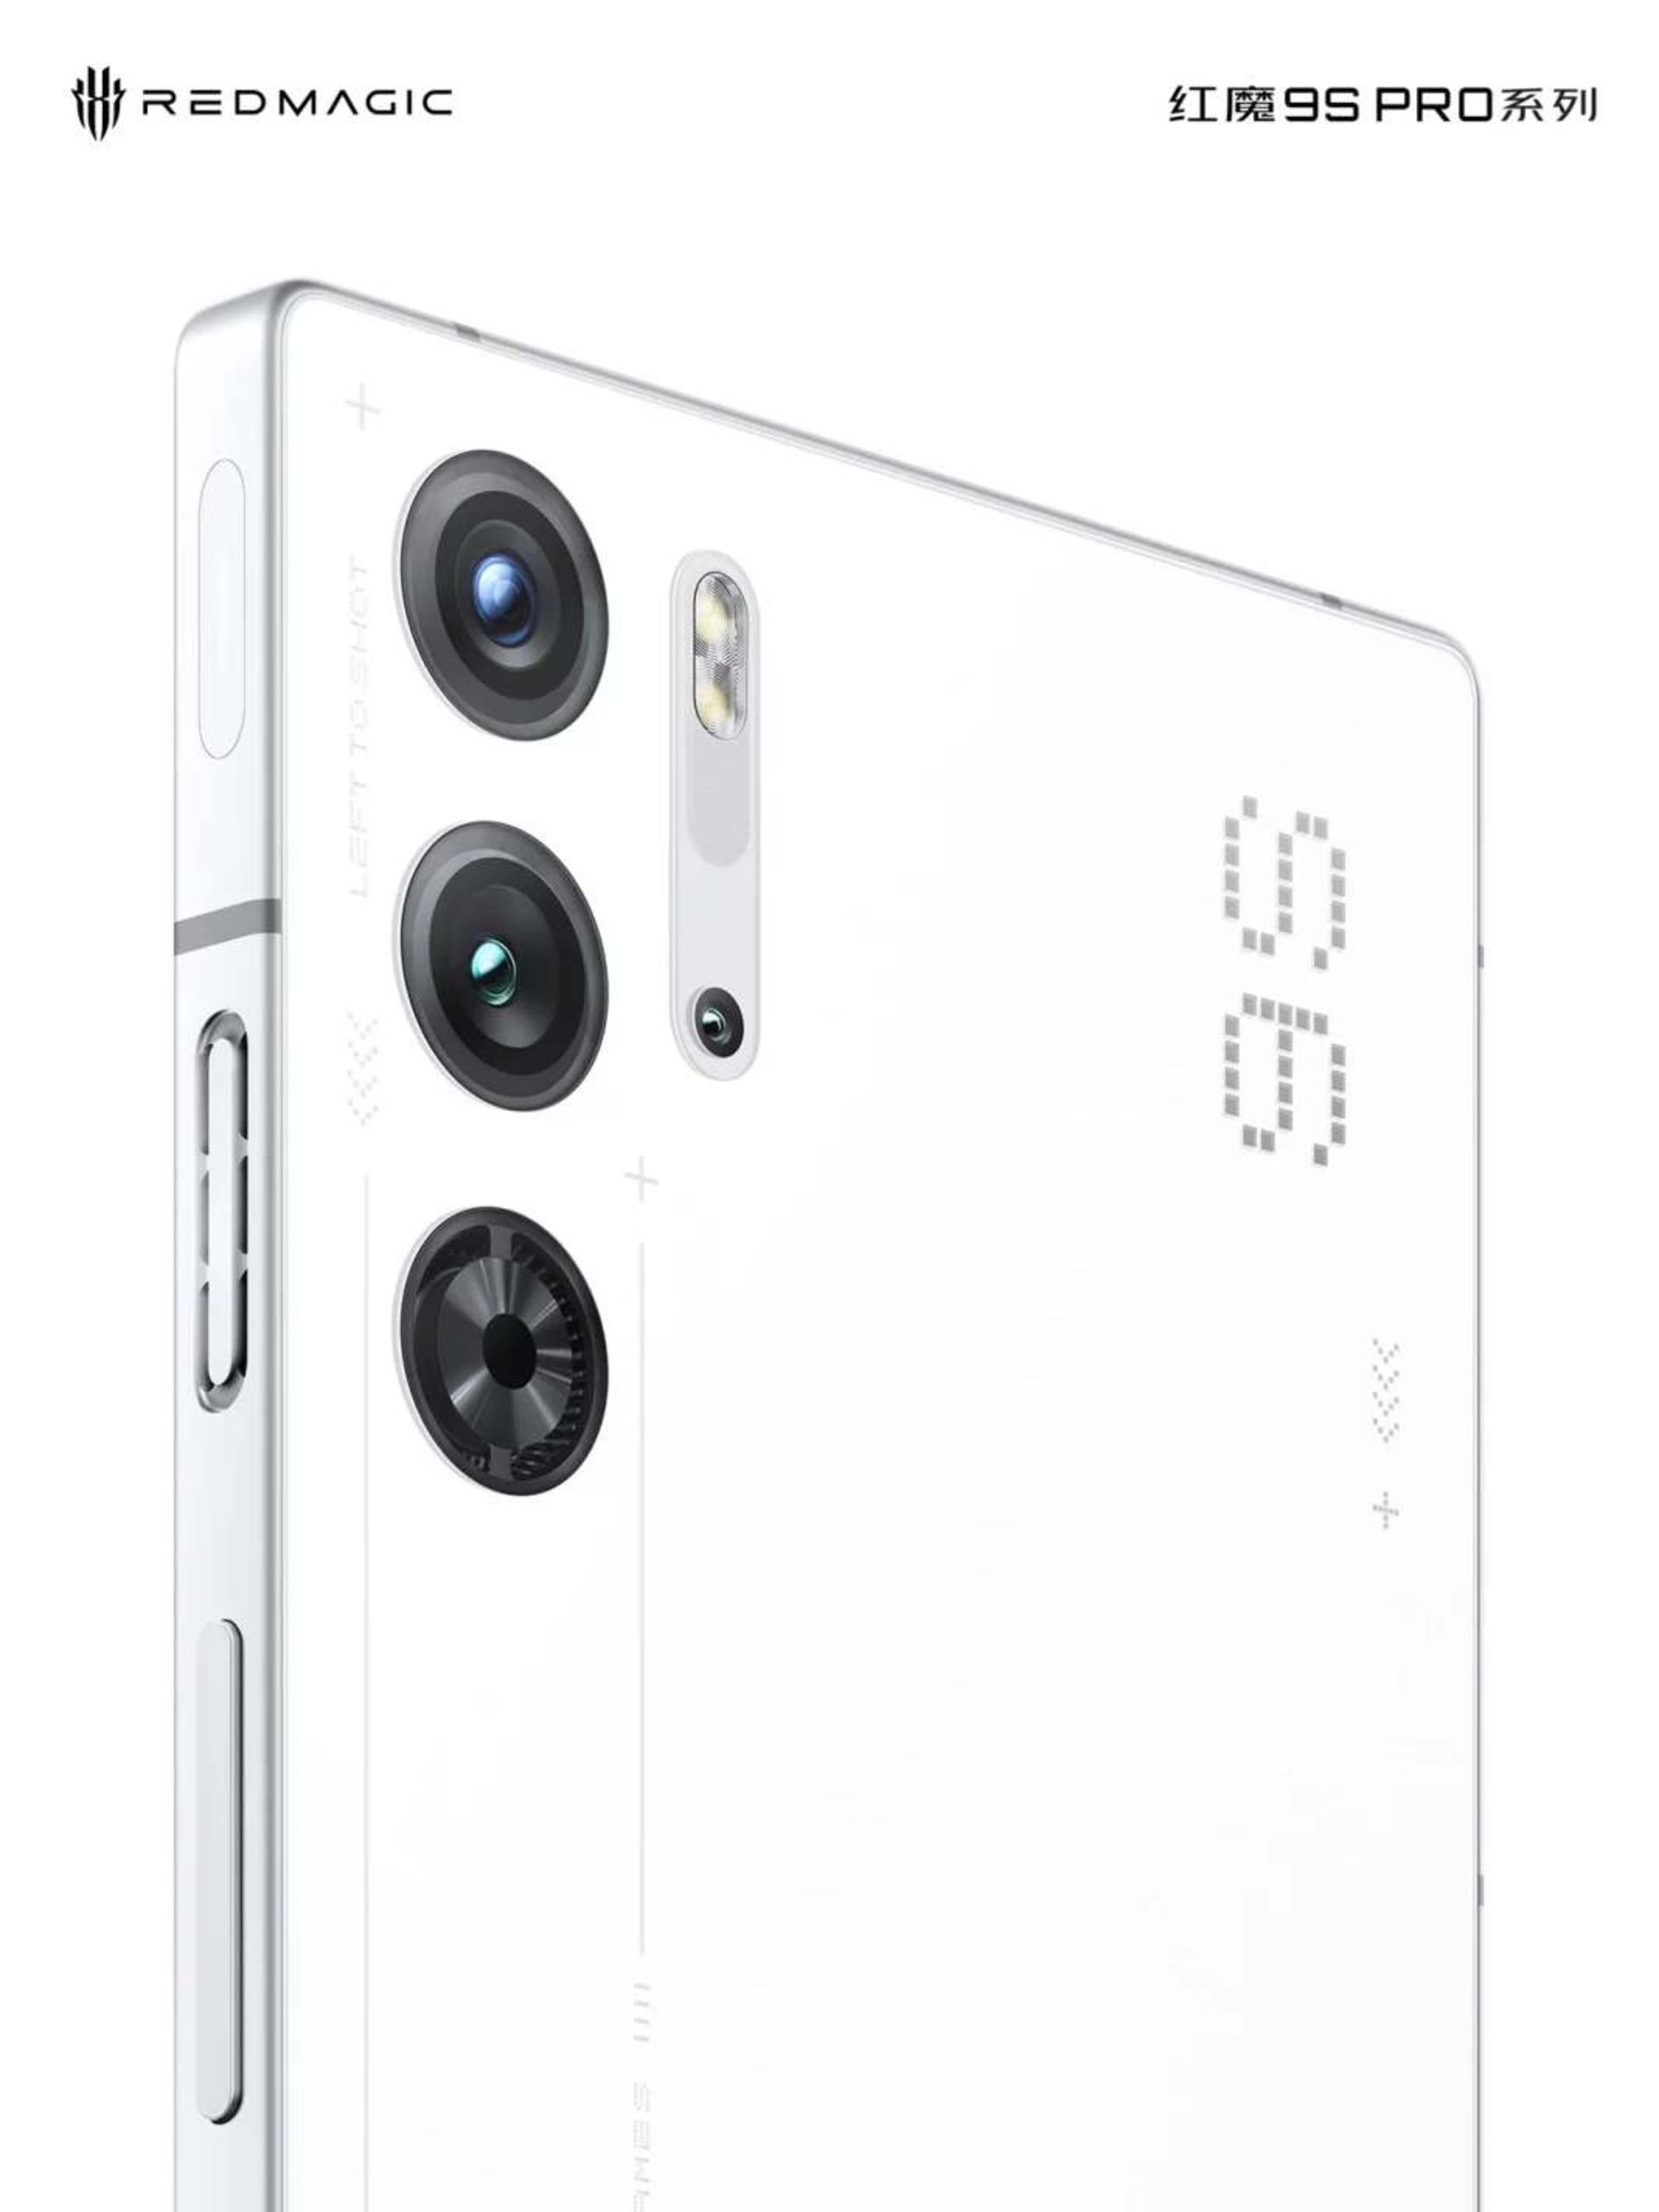 دوربین‌های گوشی ردمجیک 9s Pro در رنگ سفید غیرشفاف